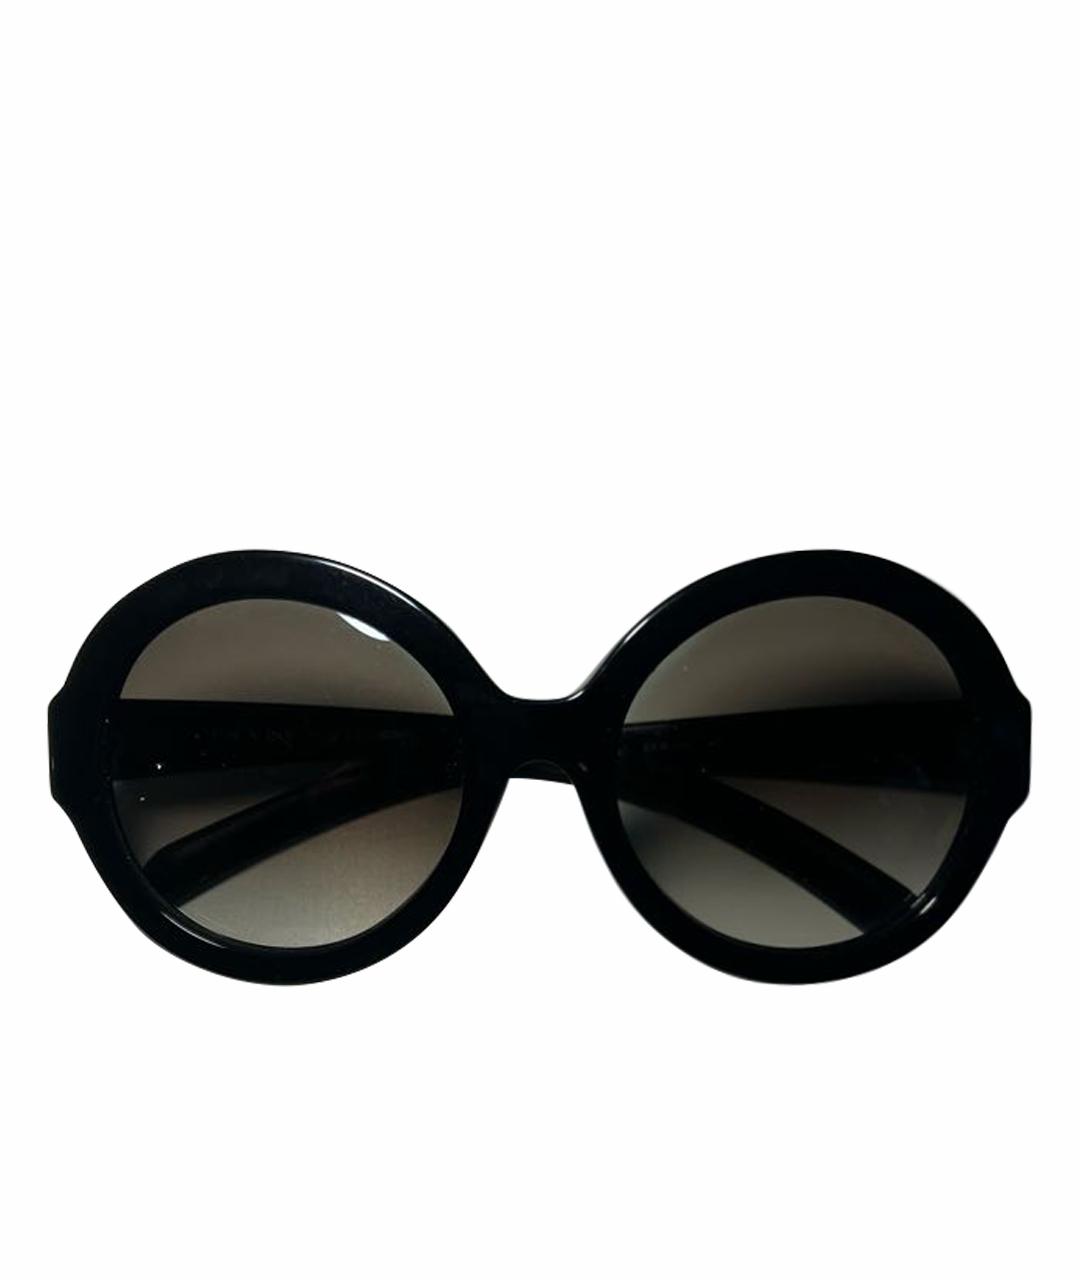 PRADA Черные пластиковые солнцезащитные очки, фото 1